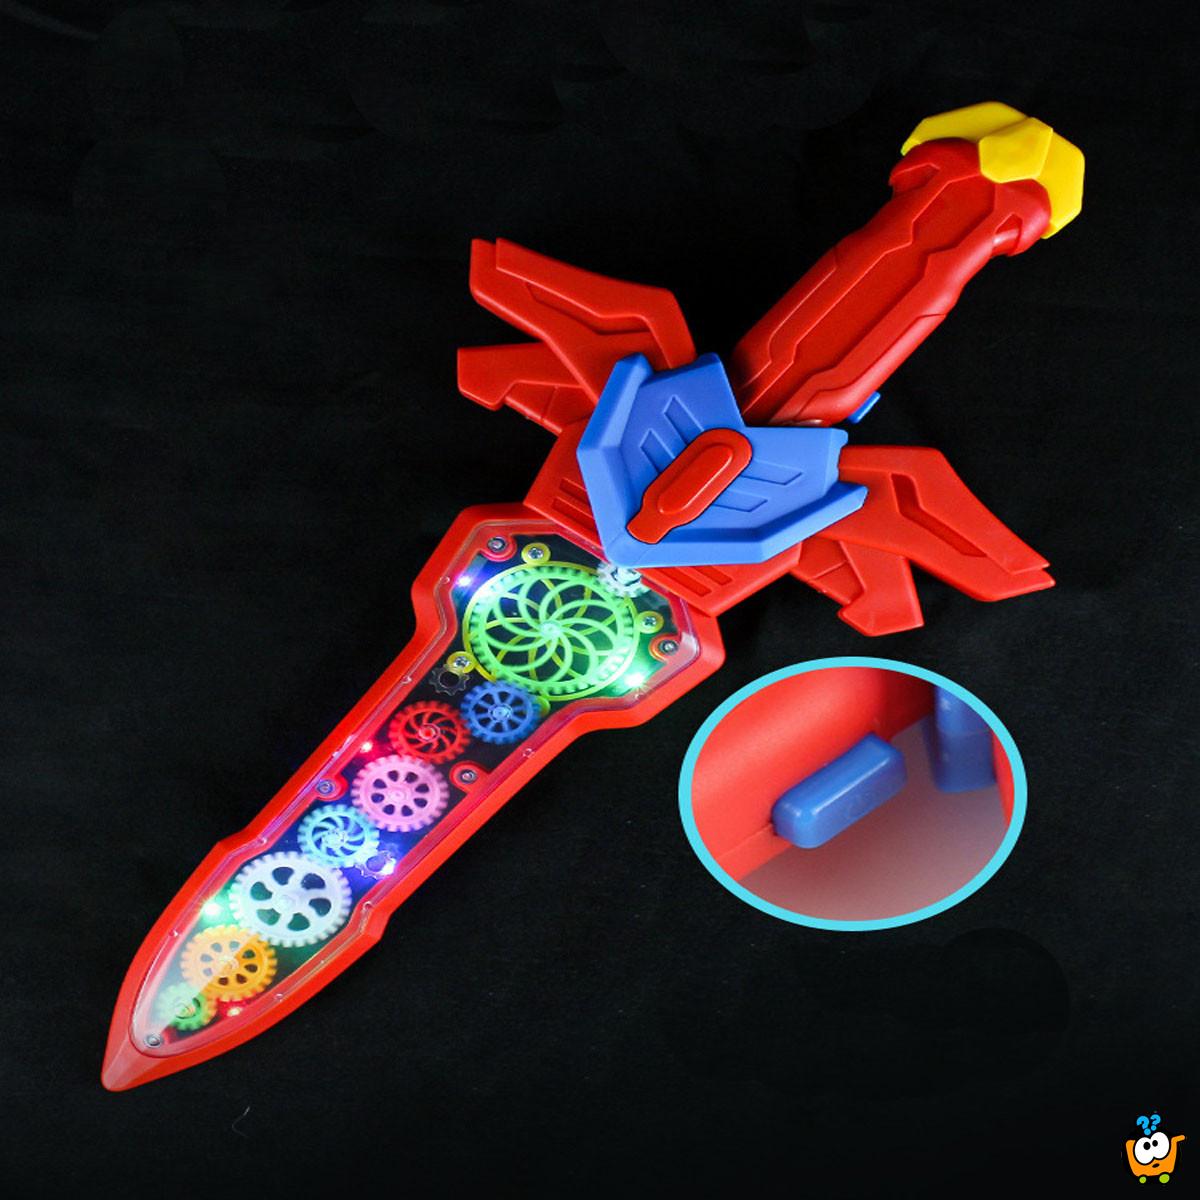 Čarobni svetlosni mač - igračka za mališane